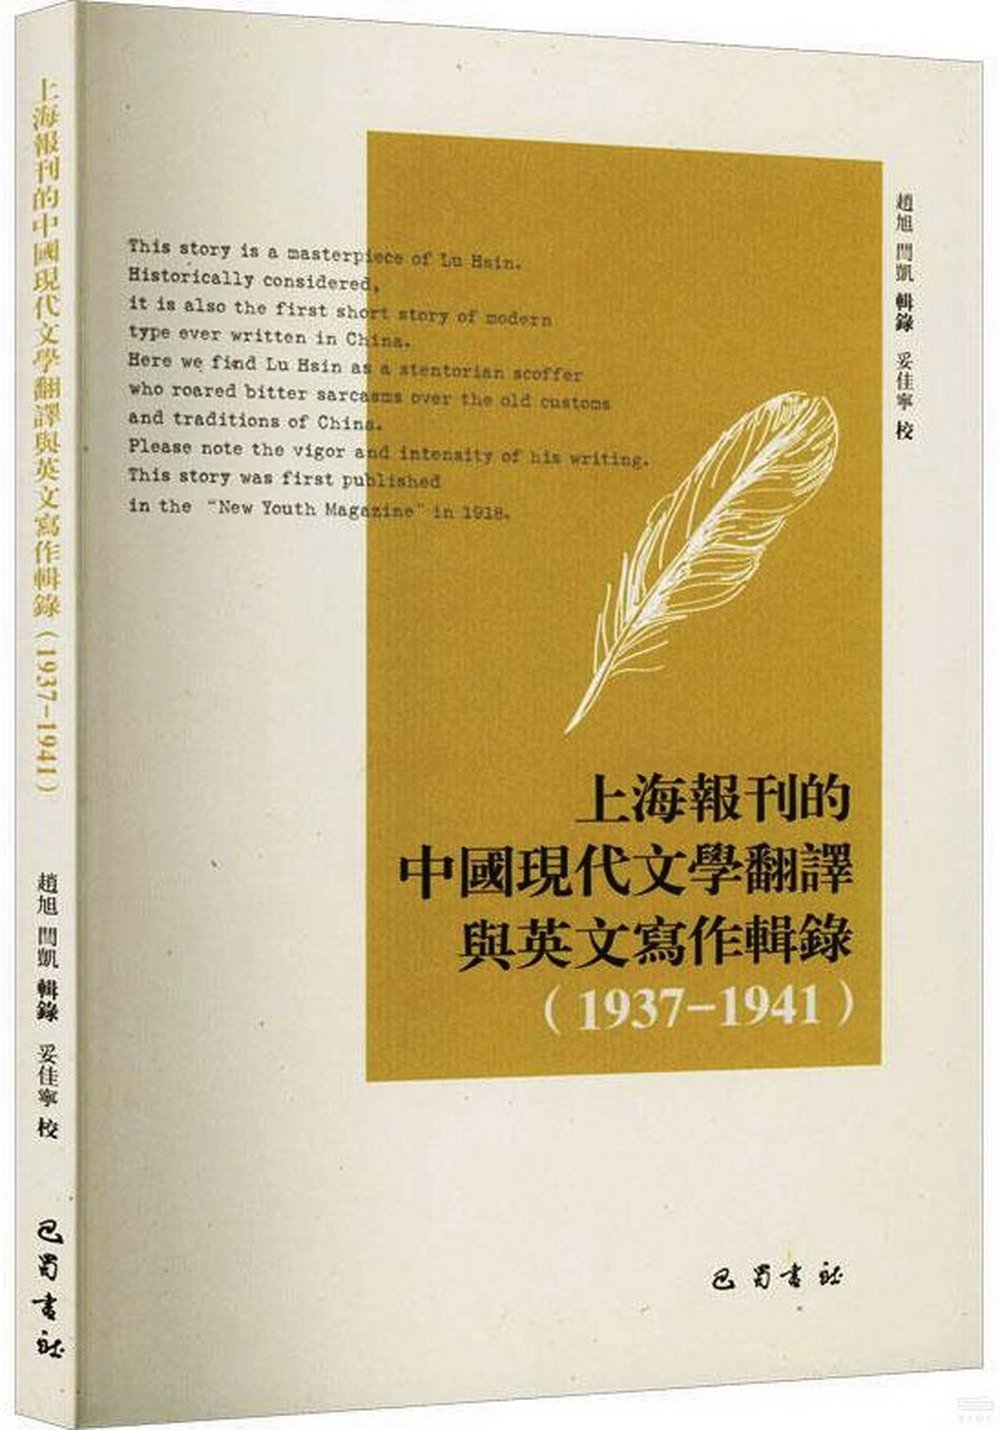 上海報刊的中國現代文學翻譯與英文寫作輯錄（1937-1941）